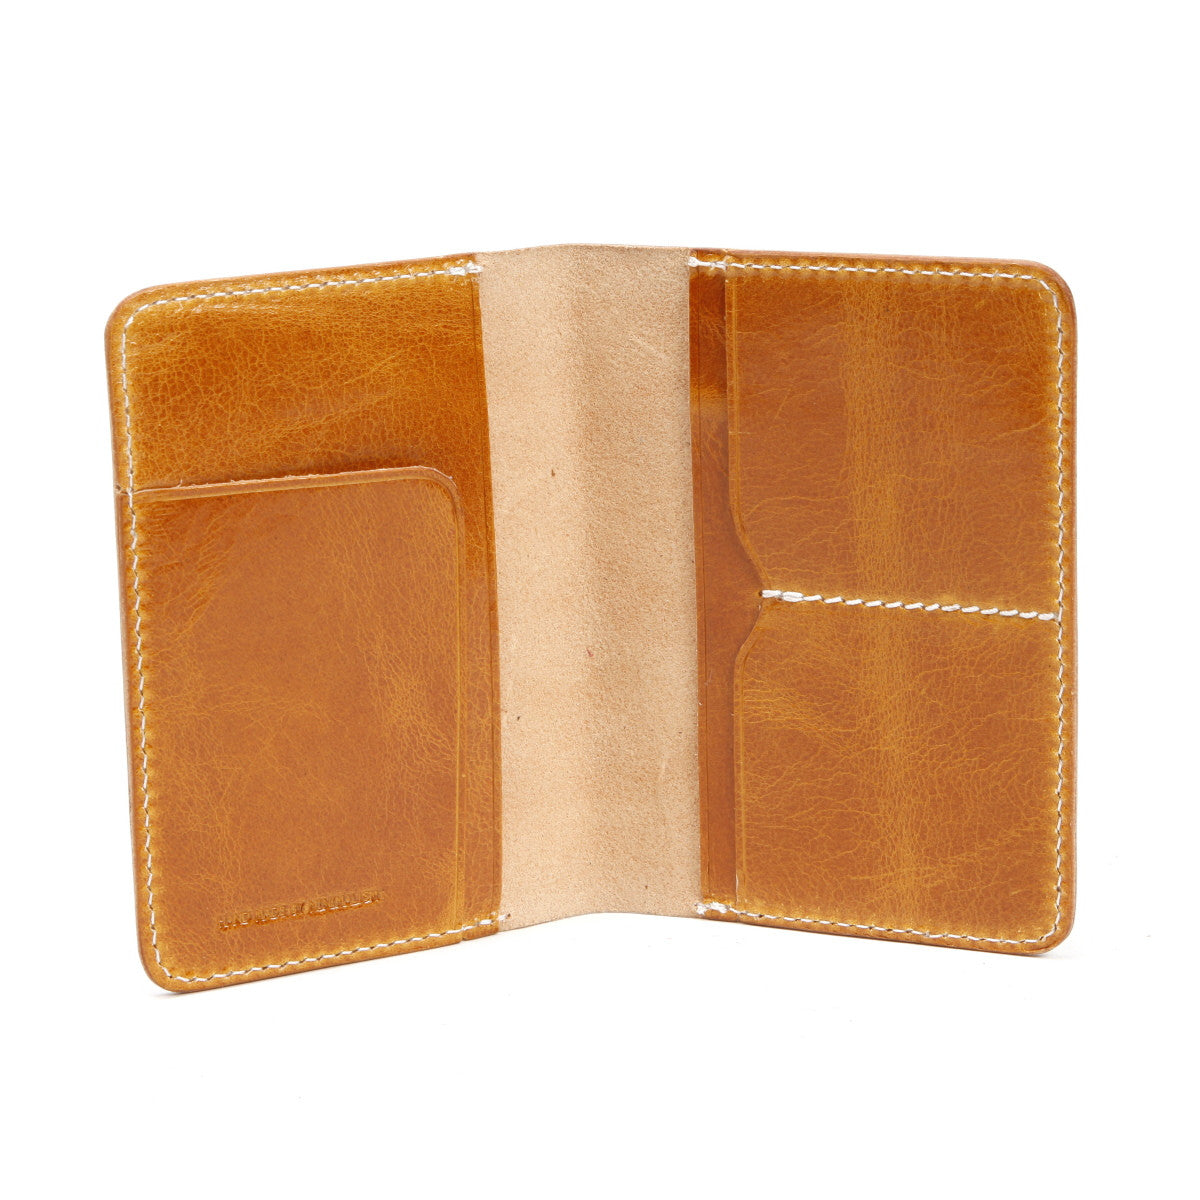 Handmade Leather Passport Wallet | Passport Holder | Travel Organizer Wallet